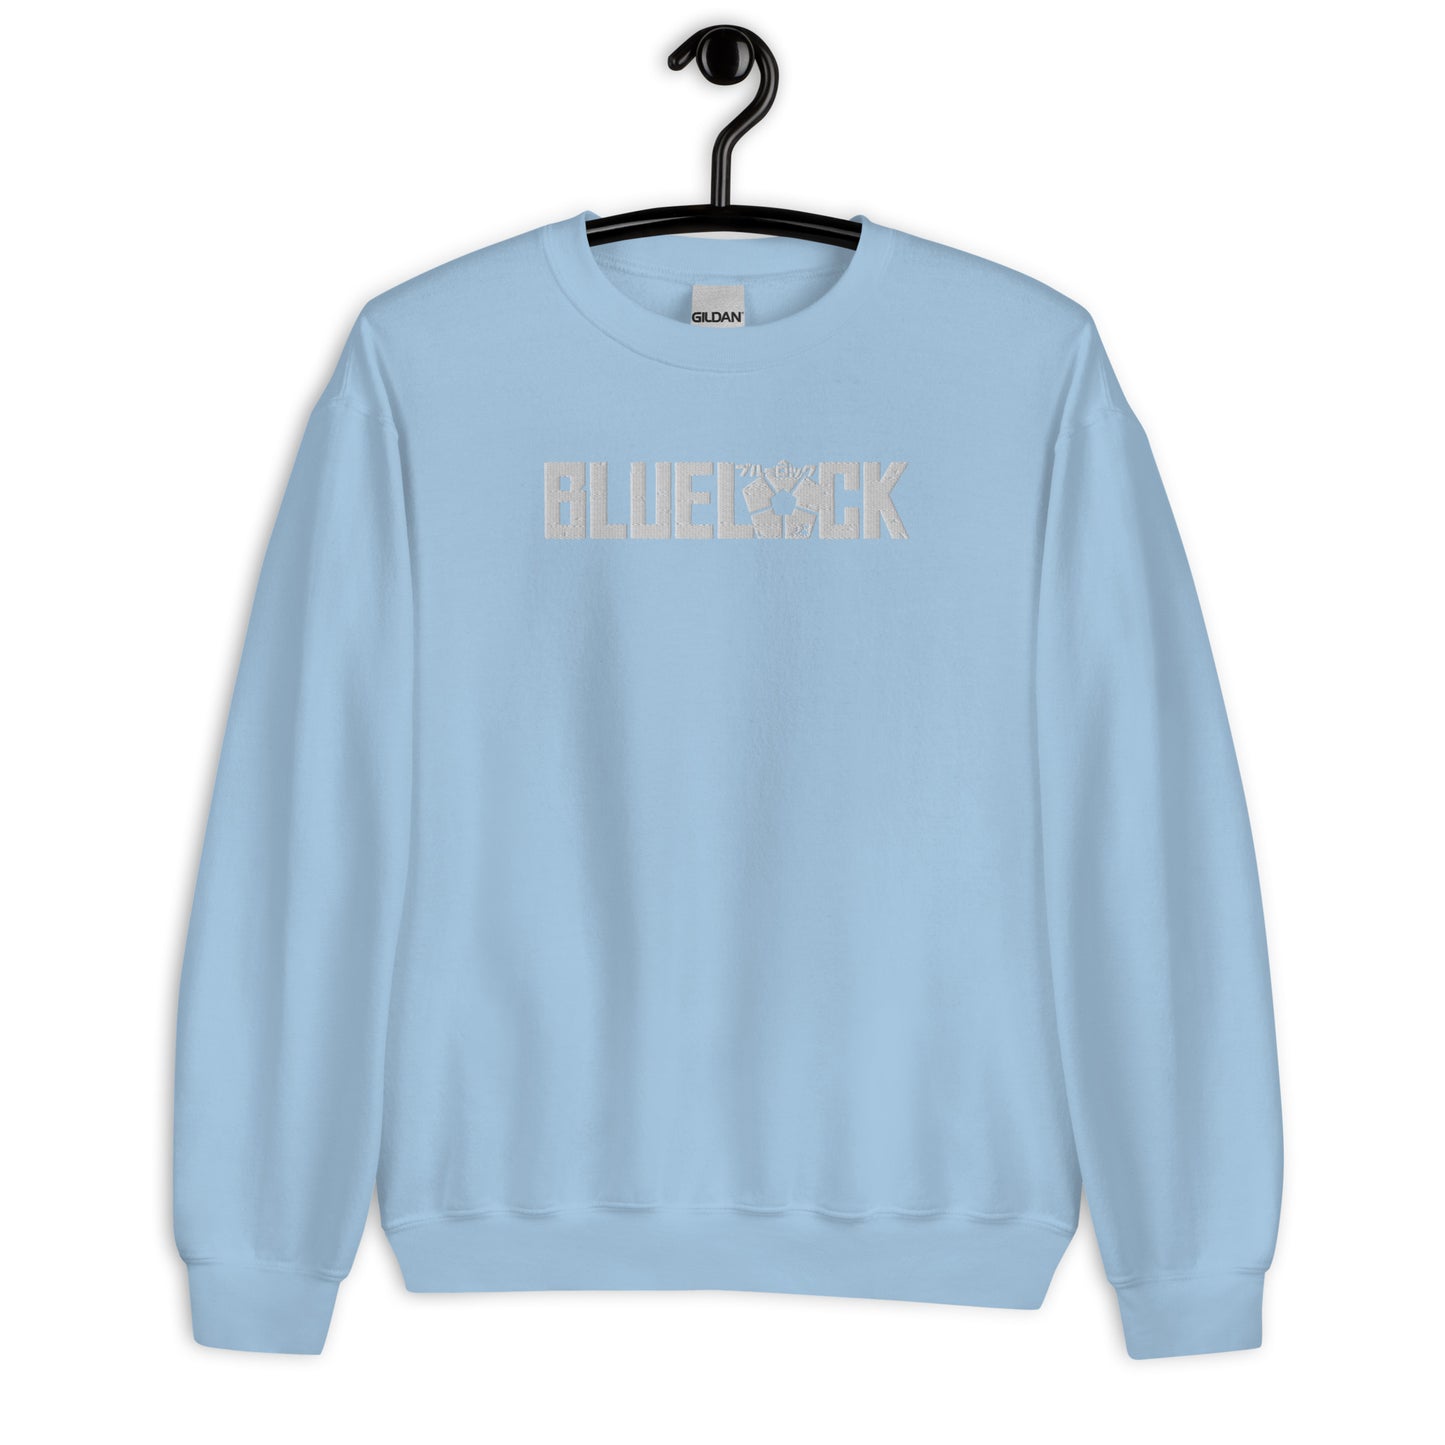 Blue Lock Anime Embroidered Crewneck Sweatshirt